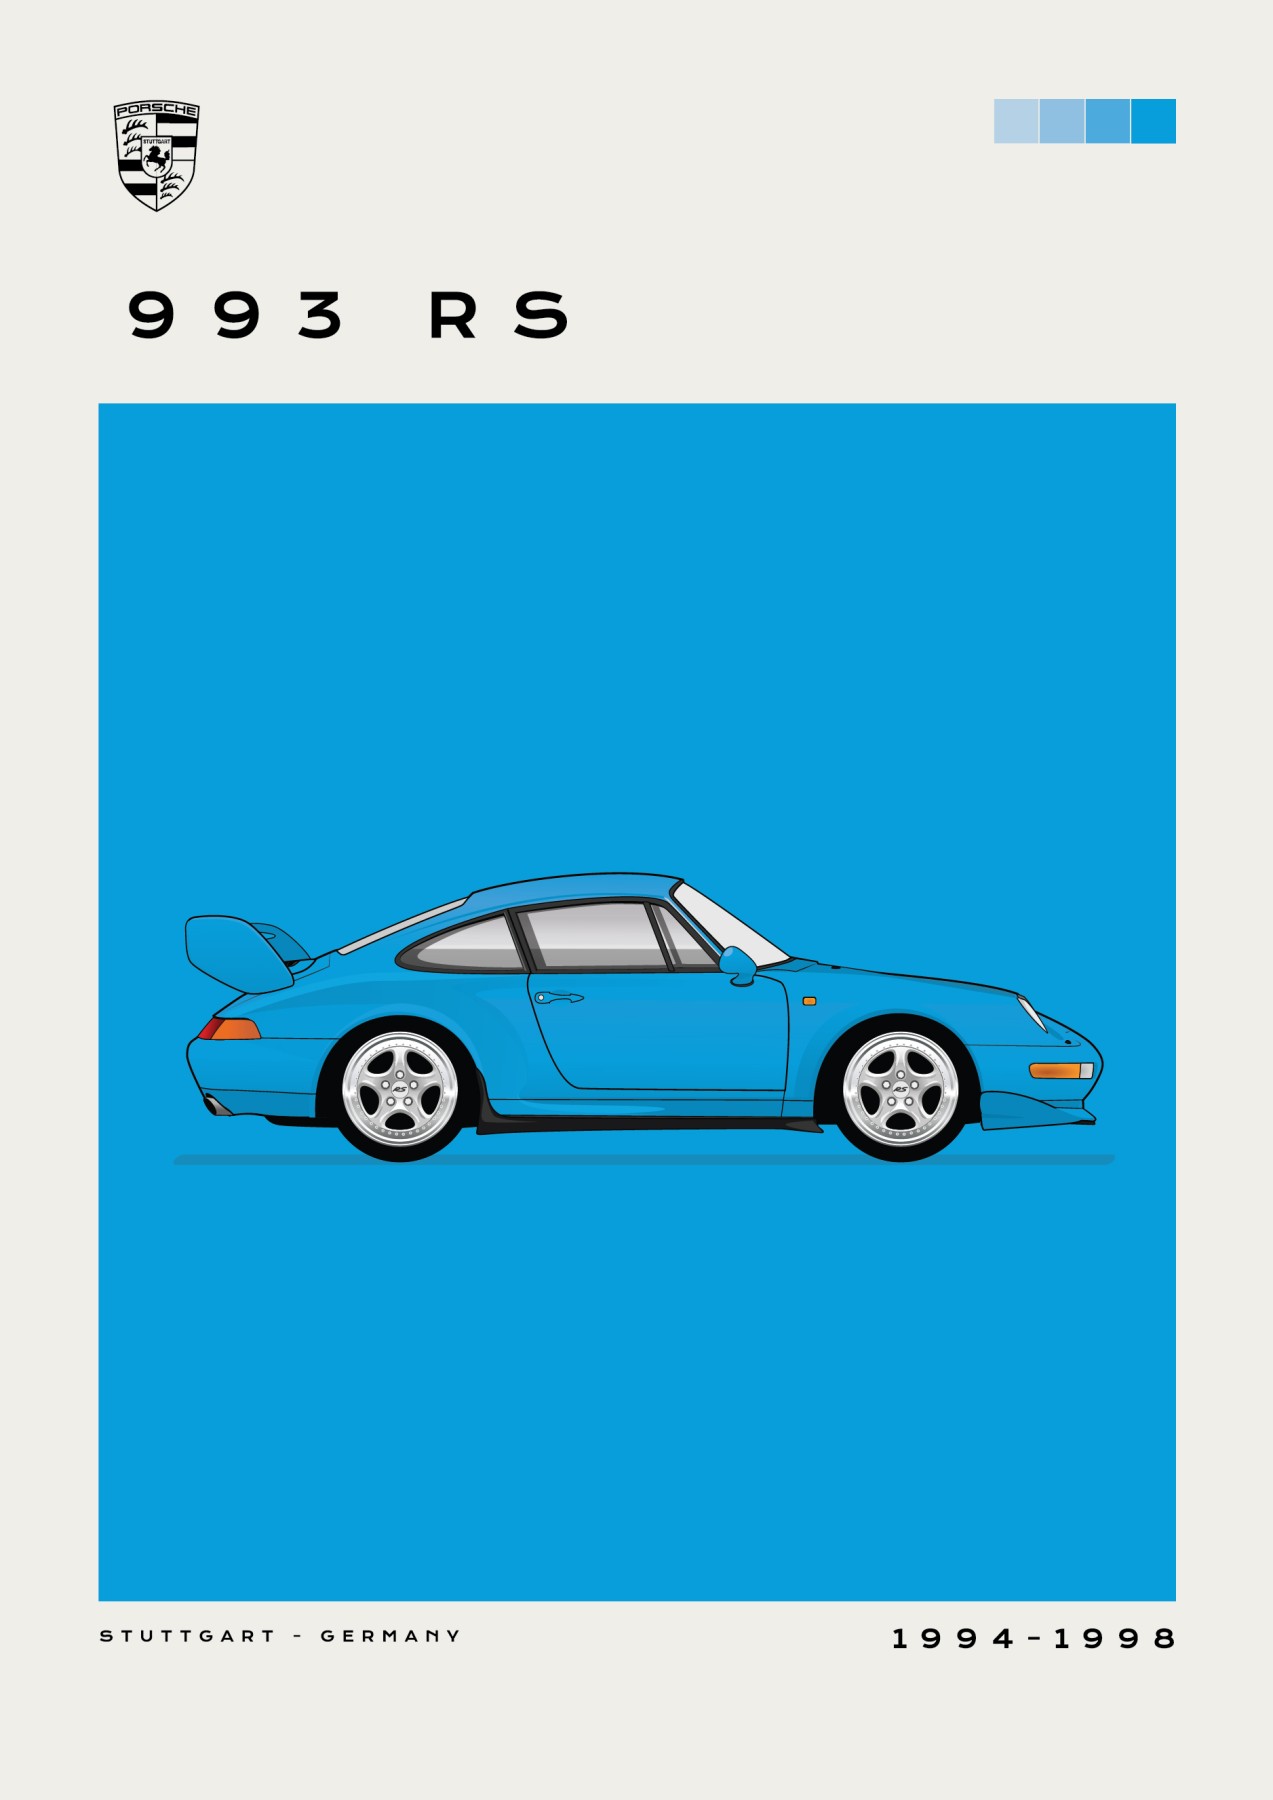 Porsche – 993 RS - BLUE